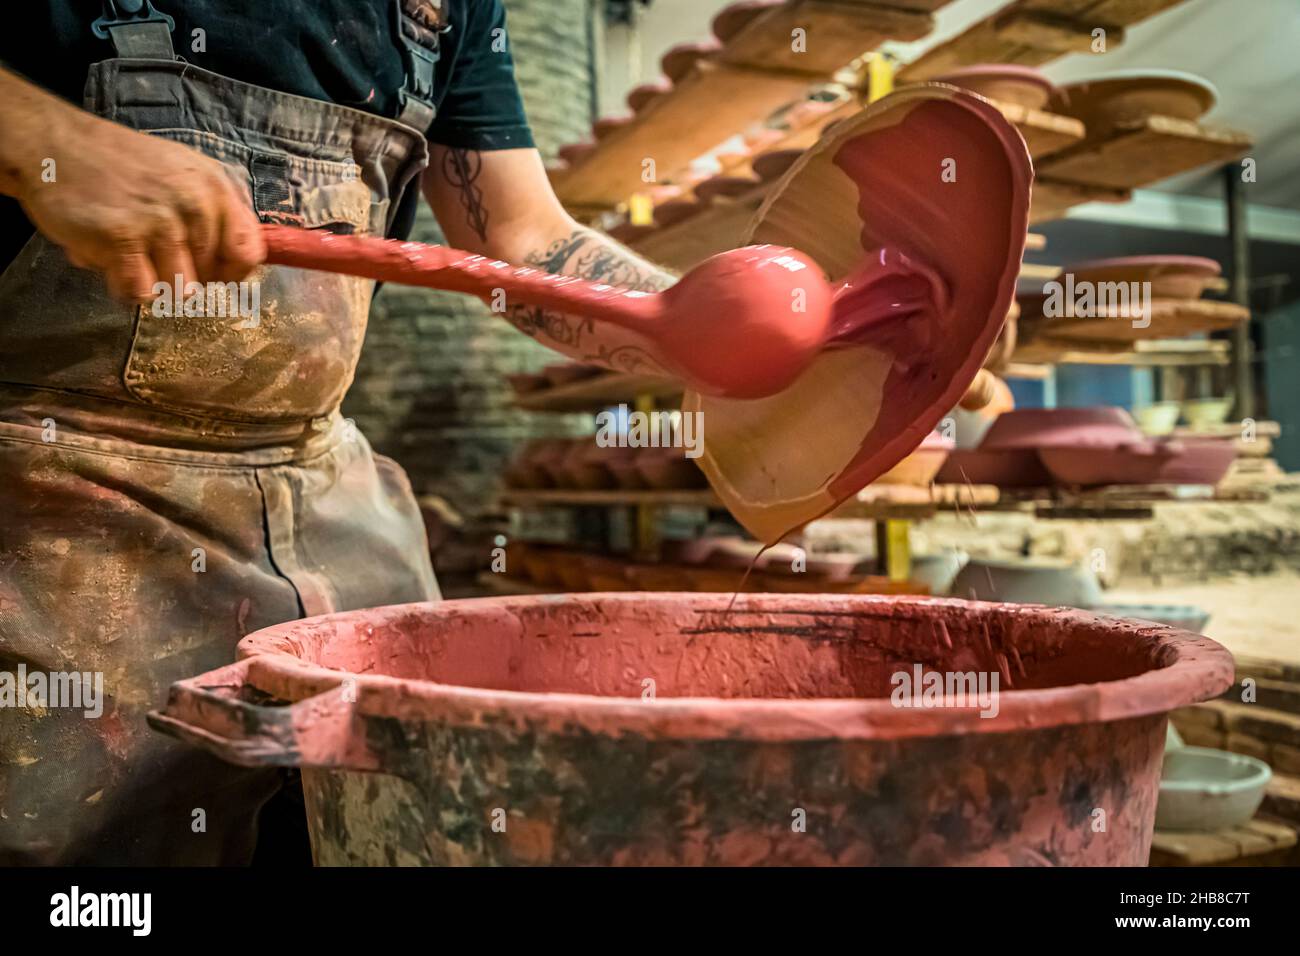 Poterie PAS à Mas-Saintes-Puelles, France. Après que les moules sont tournés de l'argile et le même jour, le premier glaçure est appliqué à la poterie. Banque D'Images